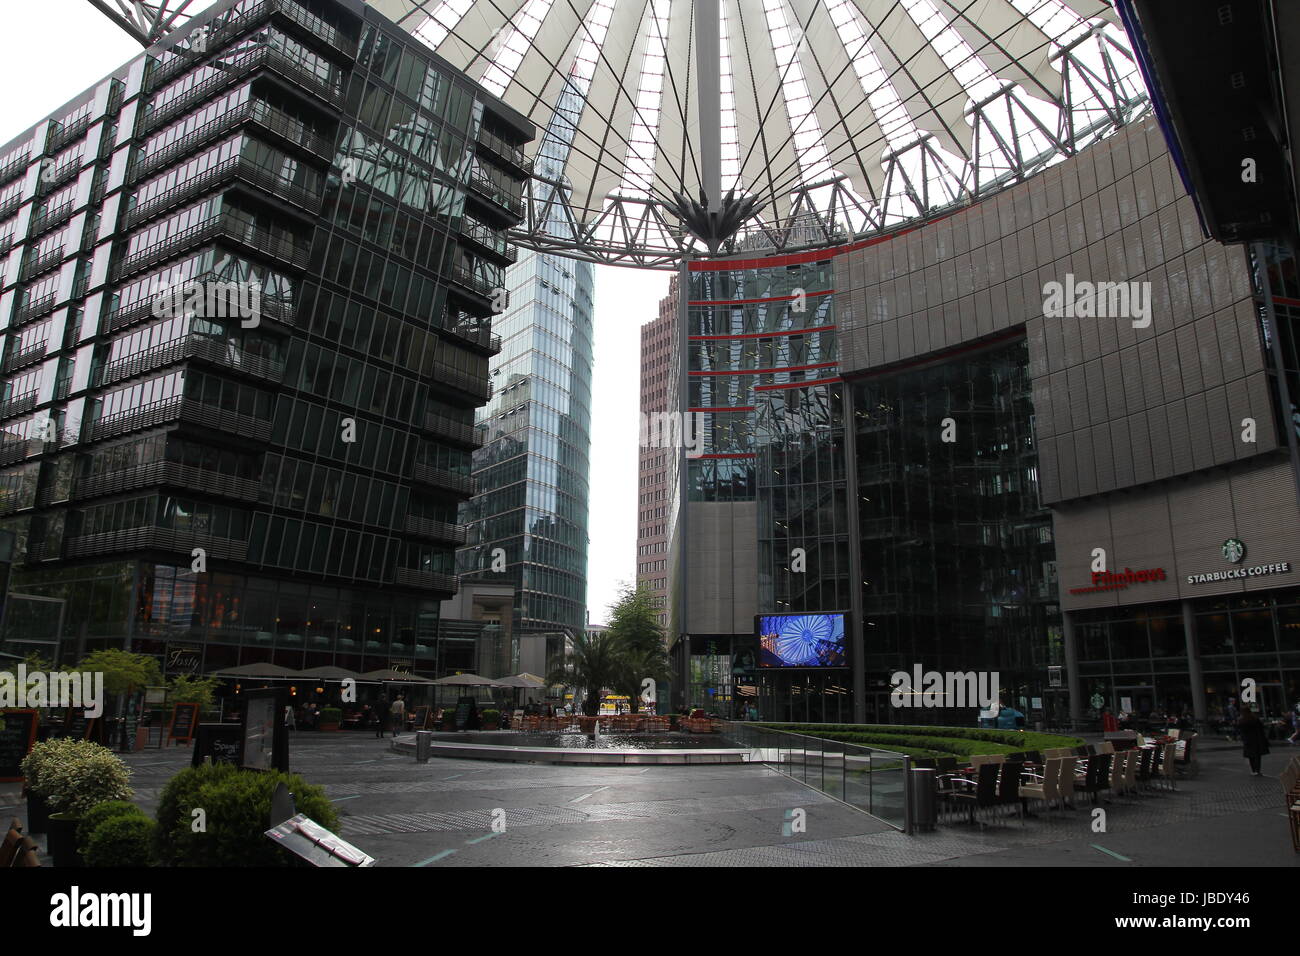 Le Sony Center Building, un complexe moderne situé sur la Potsdamer Platz à Berlin, Allemagne. Il abrite le German Banque D'Images